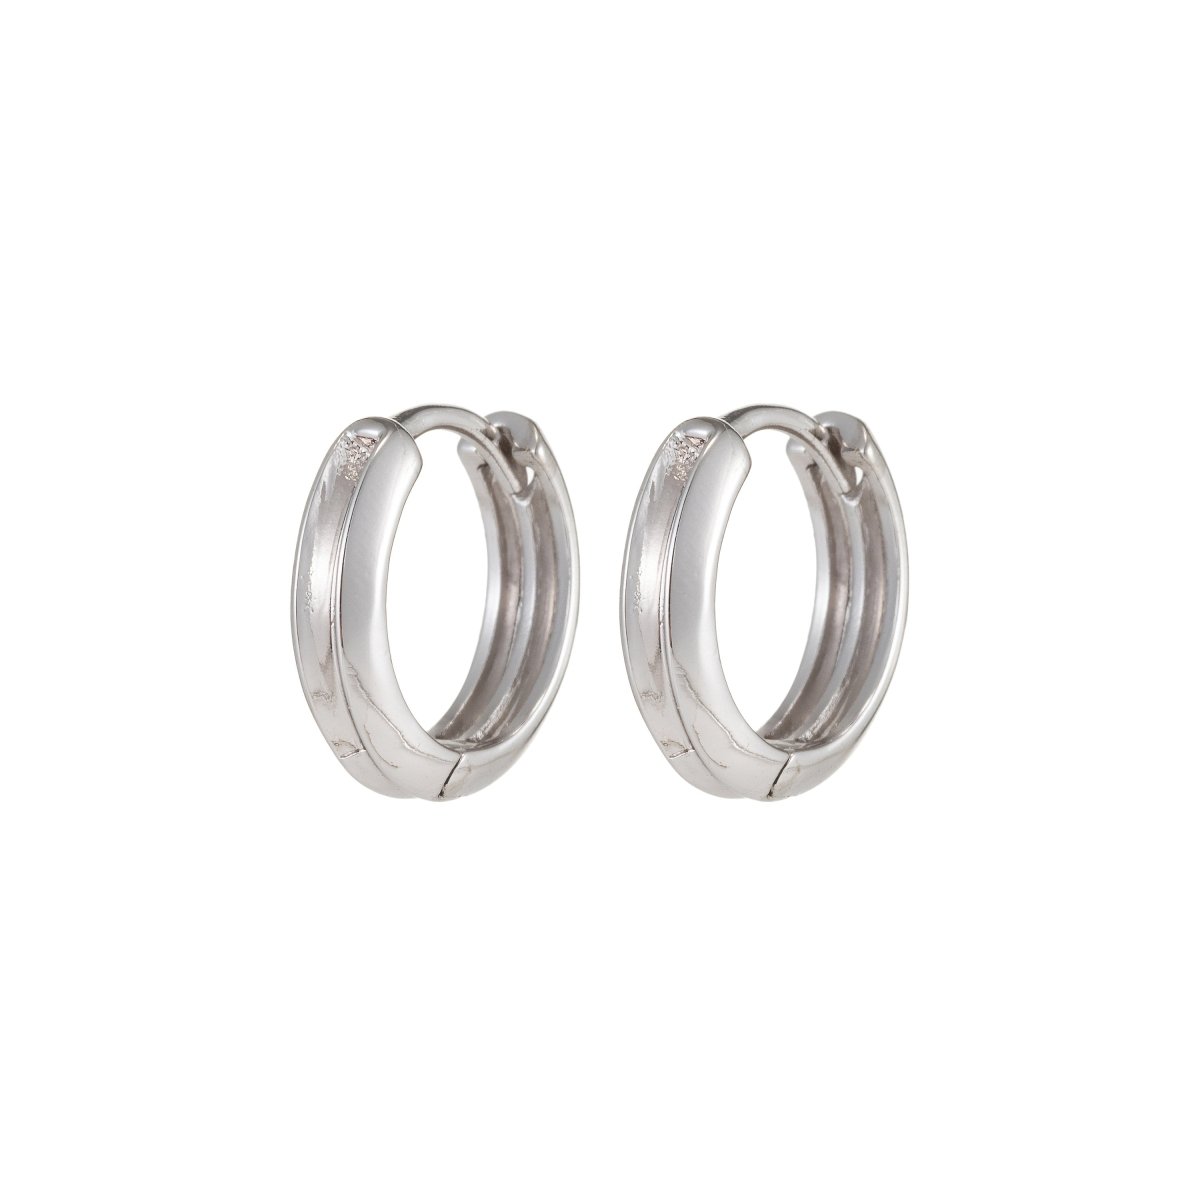 Small Silver Hoop Earrings, Silver Huggie Earrings, Simple Hoop Earrings 15mm Q-045 Q-047 Q-048 - DLUXCA